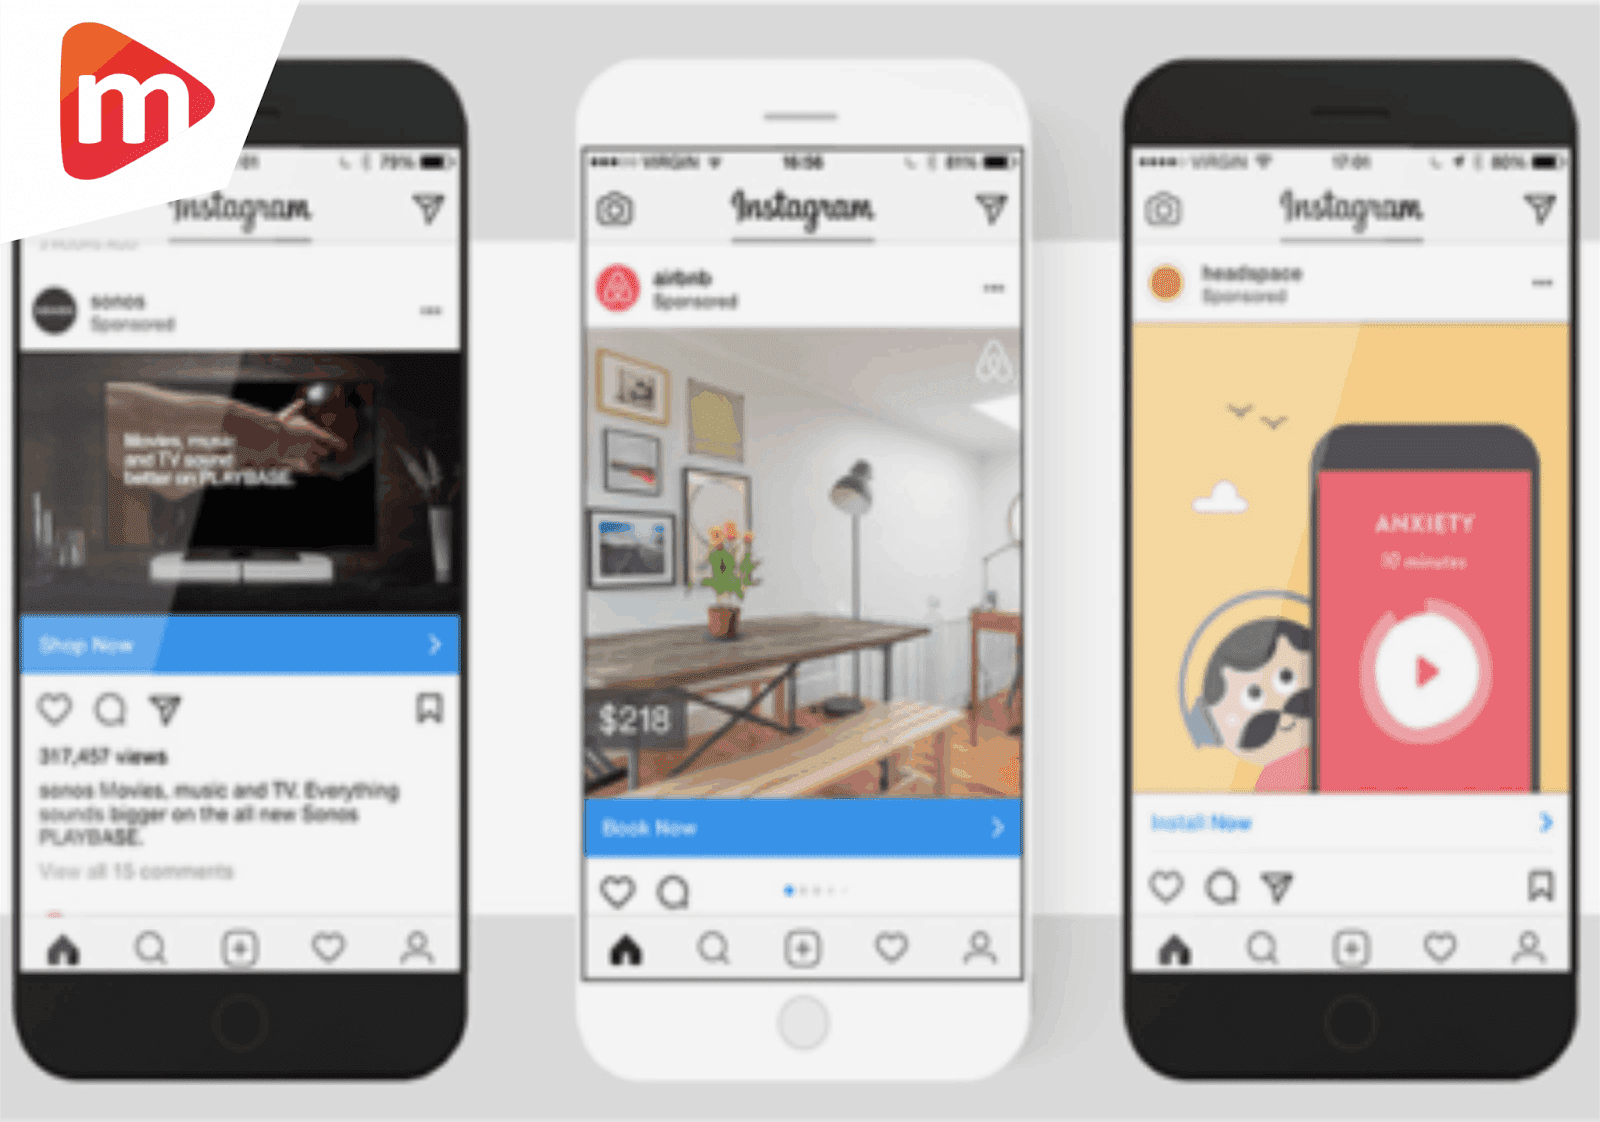 Pasang Iklan Di Instagram Mediarga Toko Online Template Premium